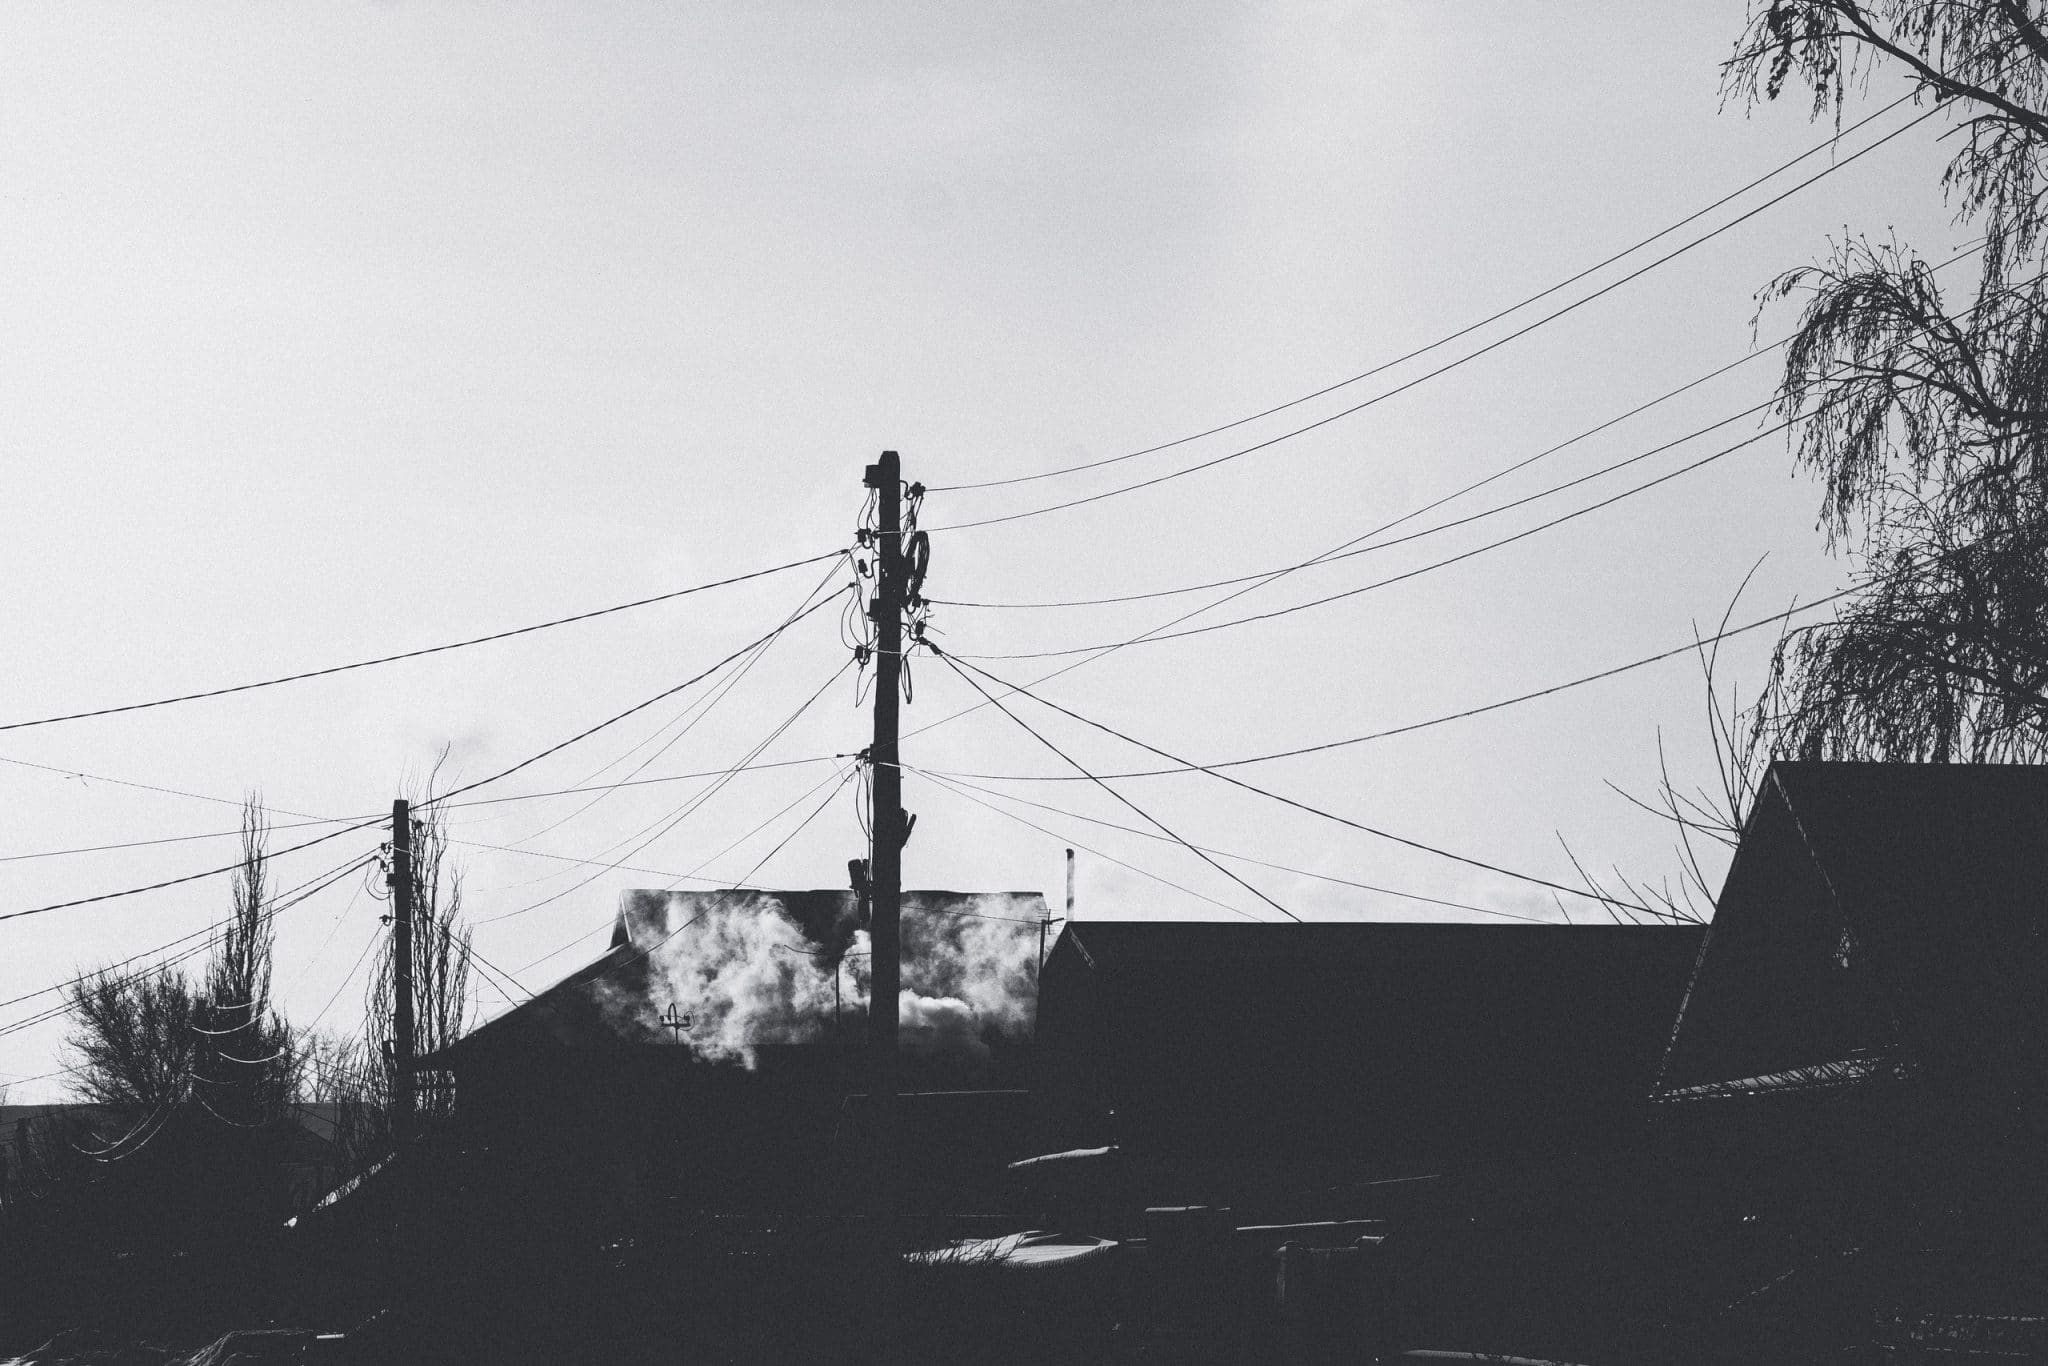 Безлюдье, тишина и дымок над трубами: фоторепортаж с морозных омских улиц